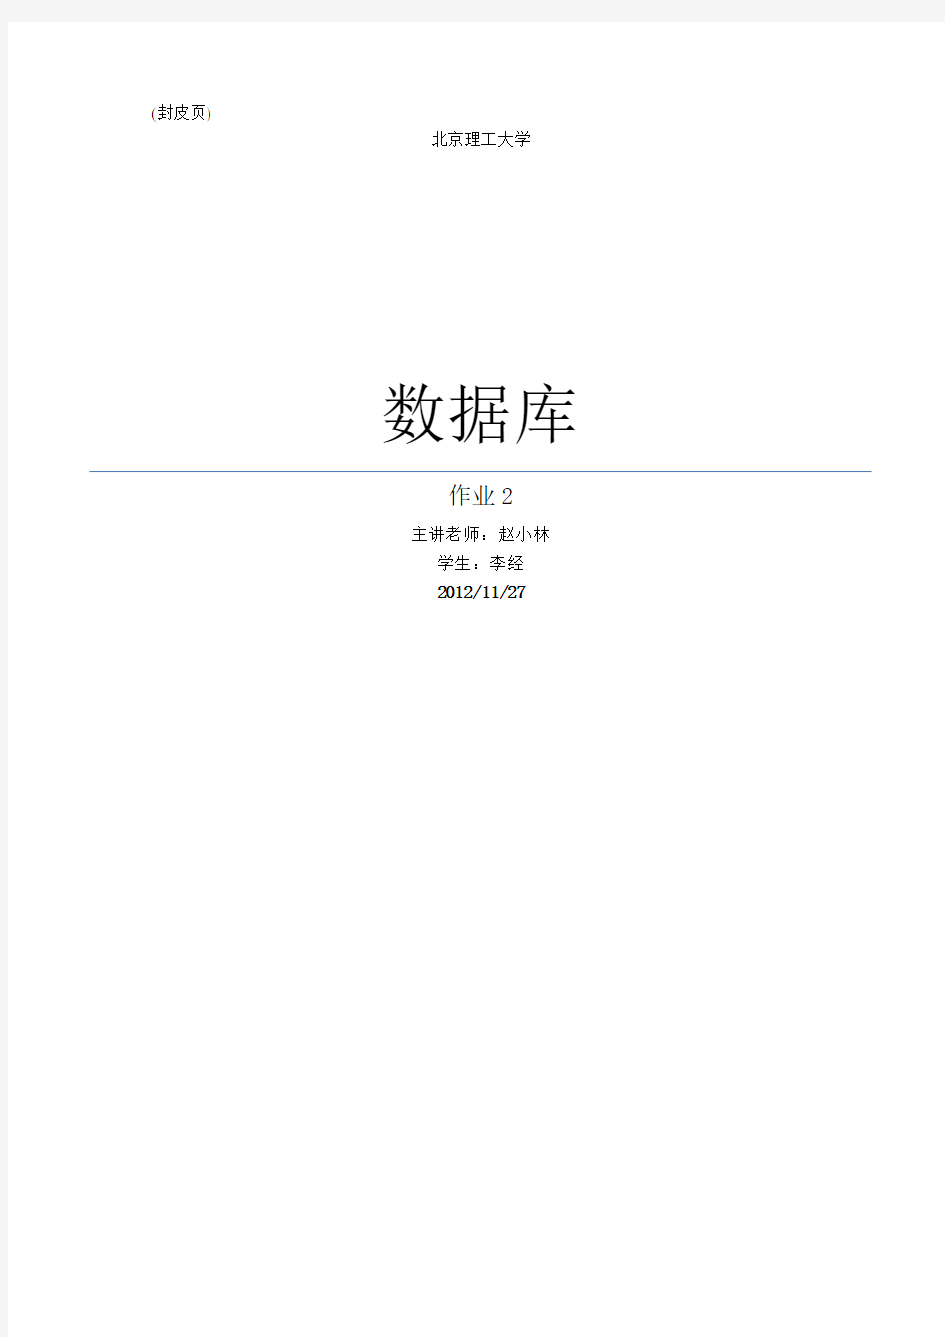 北京理工大学-数据库-作业2-数据字典表设计